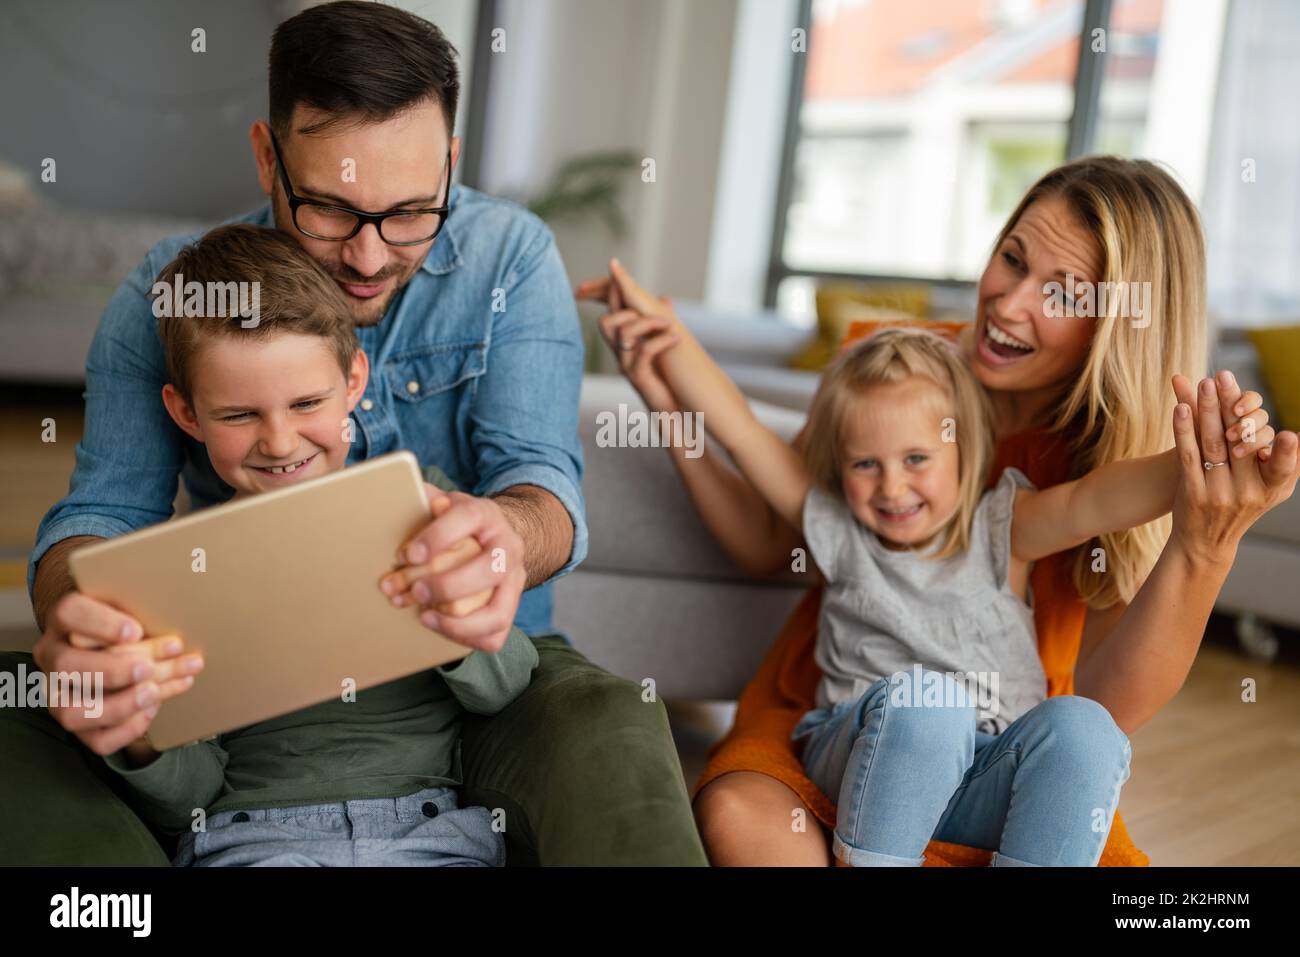 Glückliche junge Familie, die Spaß zu Hause hat. Eltern mit Kindern, die ein digitales Gerät verwenden. Stockfoto